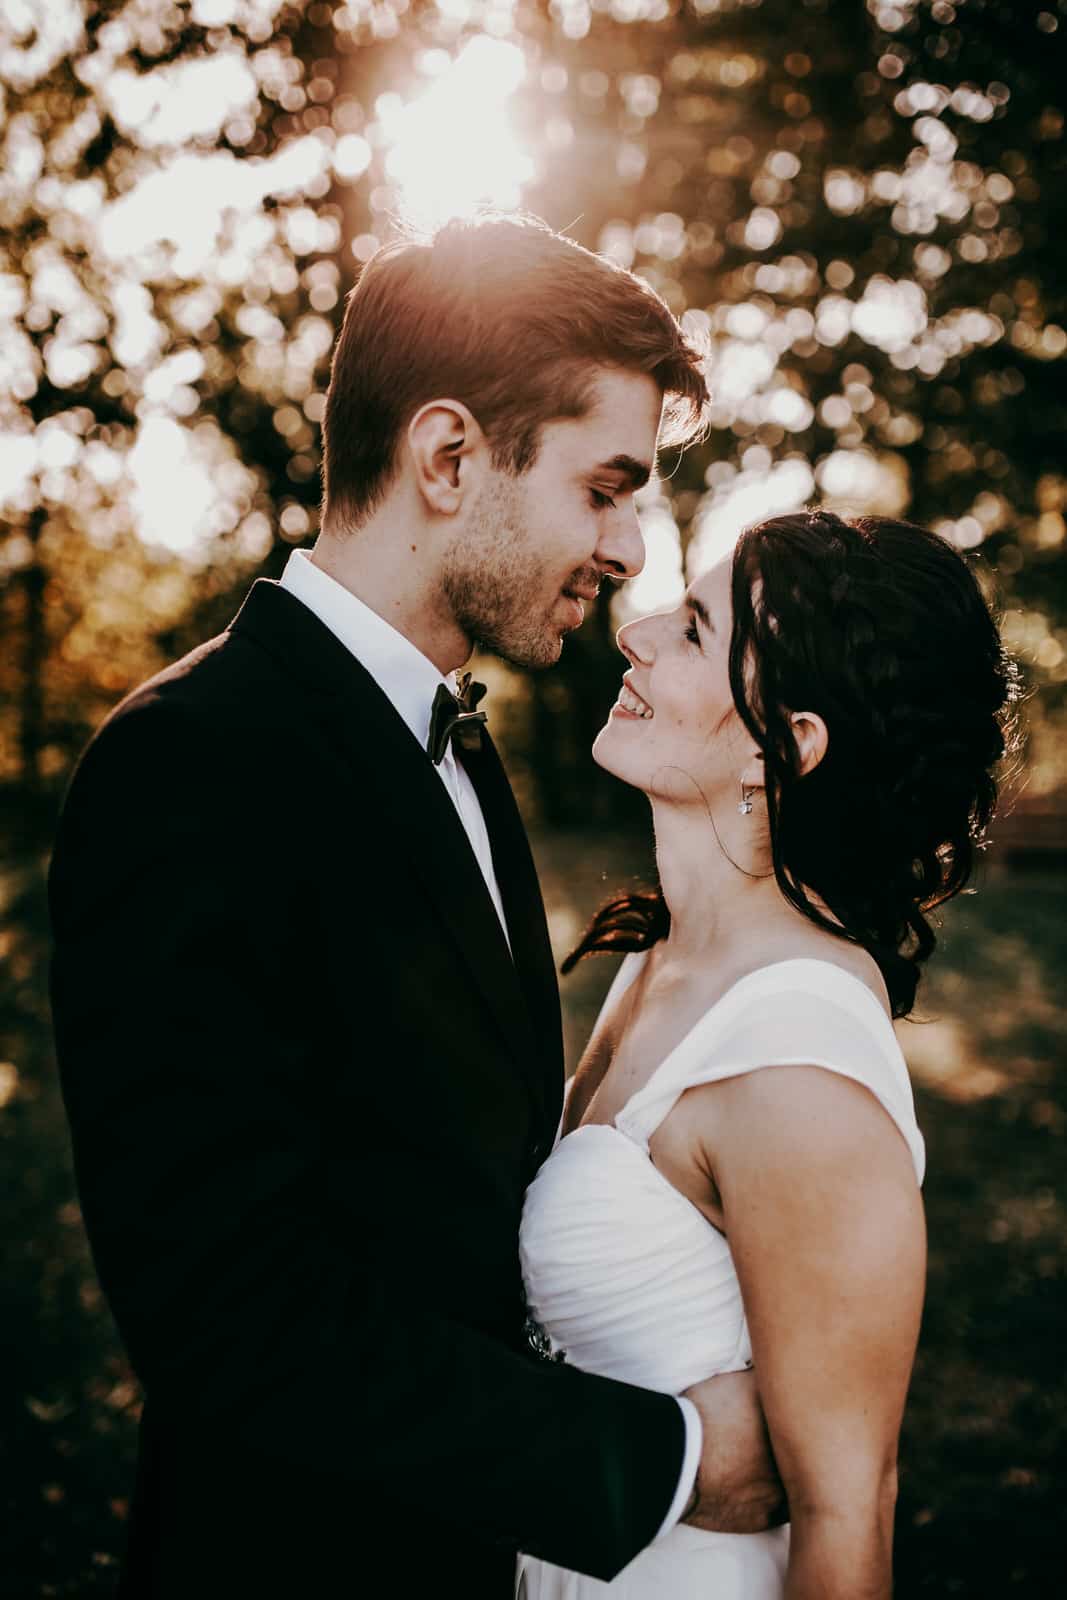 Als Hochzeitsfotografen lieben wir warmes natürliches Licht. SO wie hier auf diesem Bild. Es sind nur die Köpfe und ein Teil des Oberkörpers des Brautpaares zu sehen. Braut und Bräutigam sehen sich verliebt an.